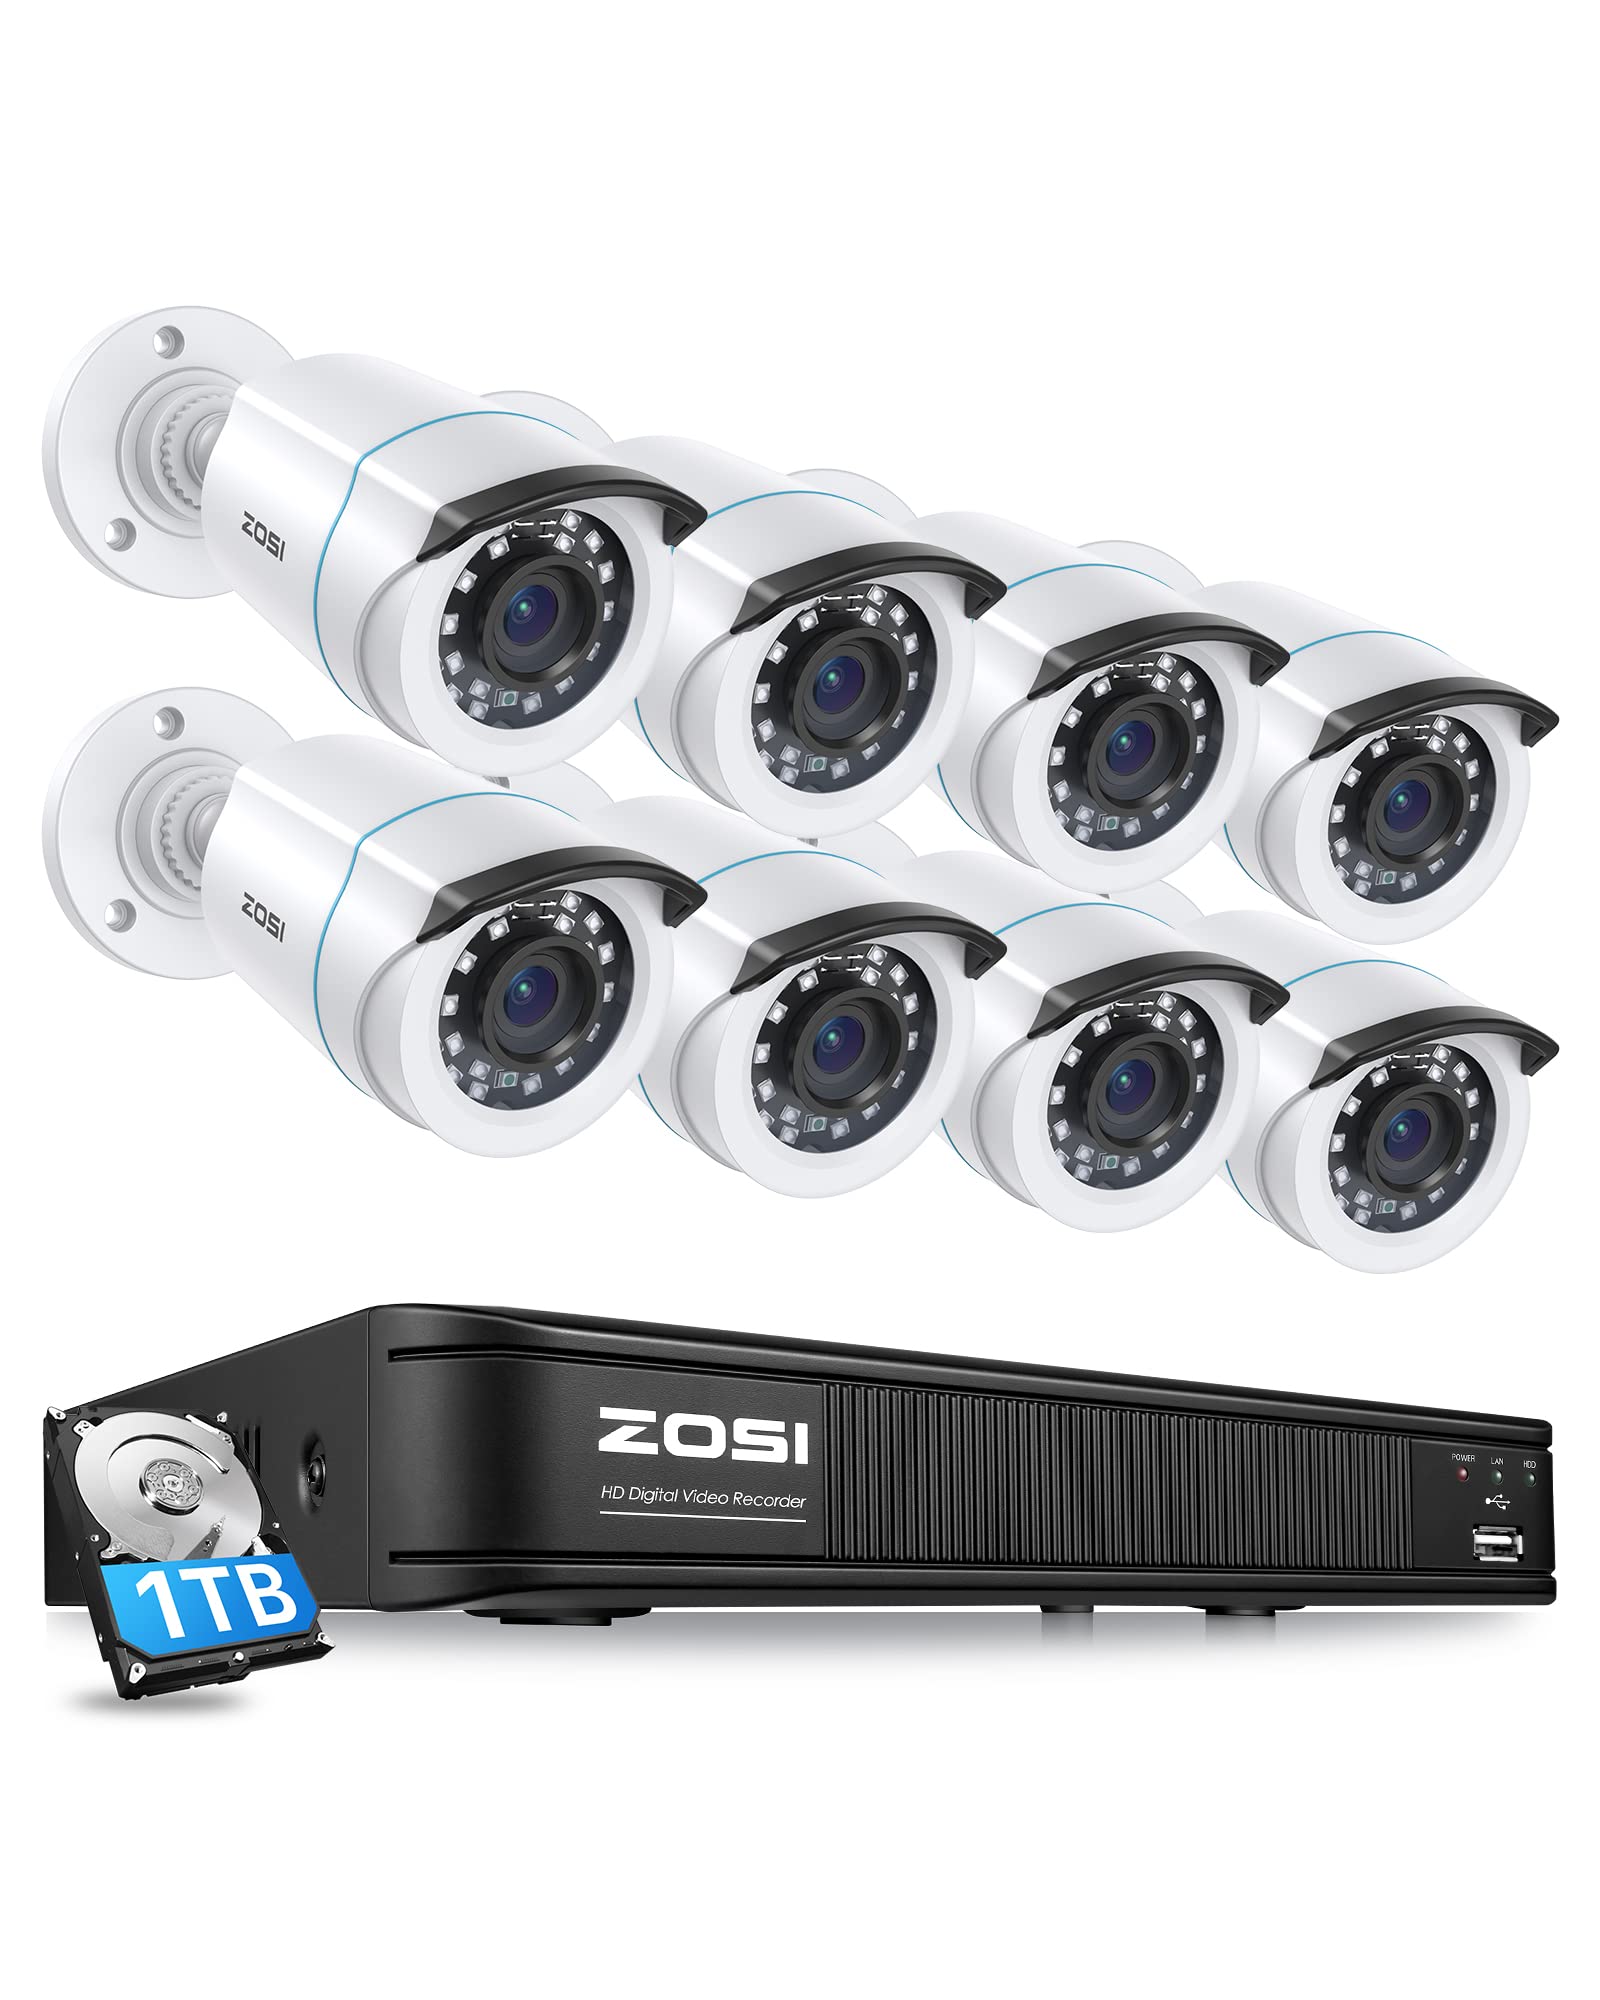  ZOSI 1080P H.265+ ホームセキュリティカメラシステム、5MP Lite 8 チャンネル CCTV DVR レコーダー、ハードドライブ 1TB および 8 x 1080p 耐候性バレットカメラ...